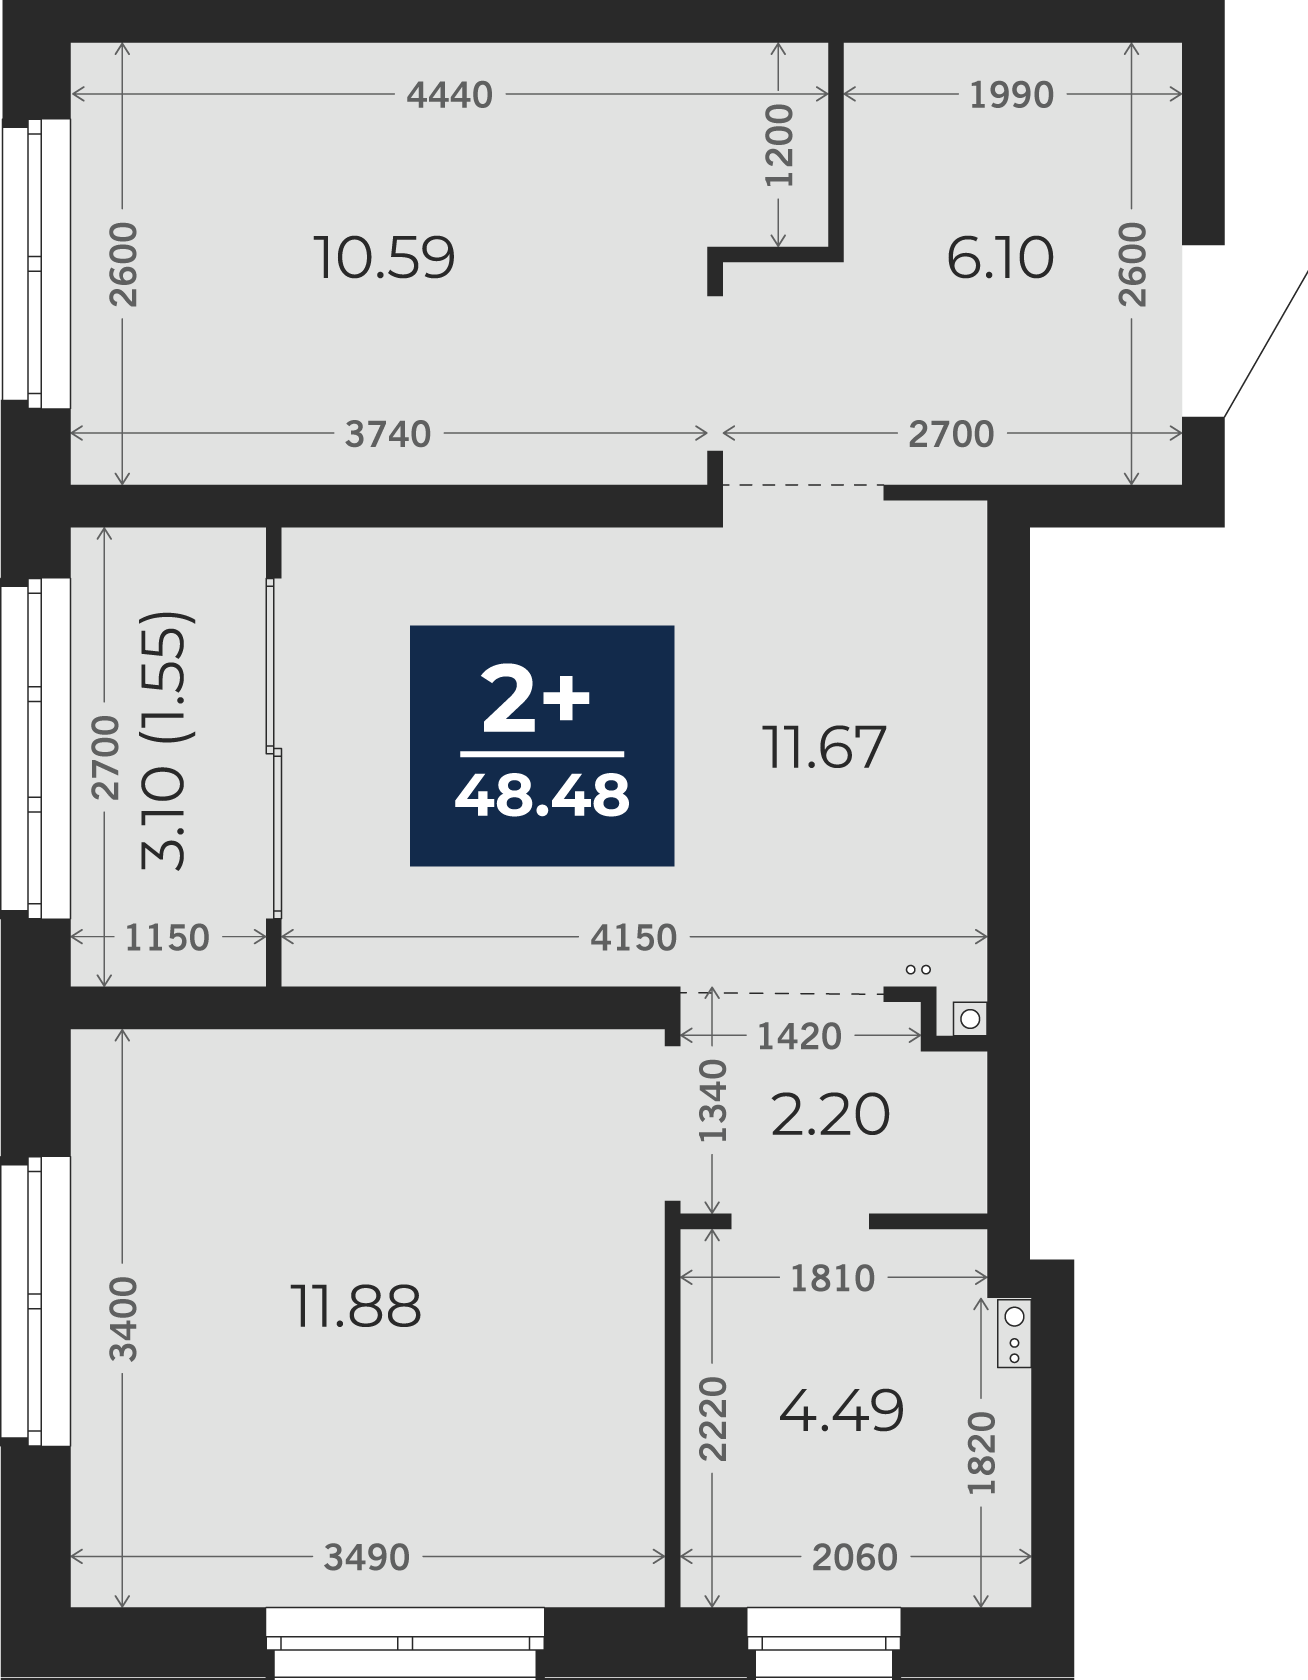 Квартира № 53, 2-комнатная, 48.48 кв. м, 4 этаж